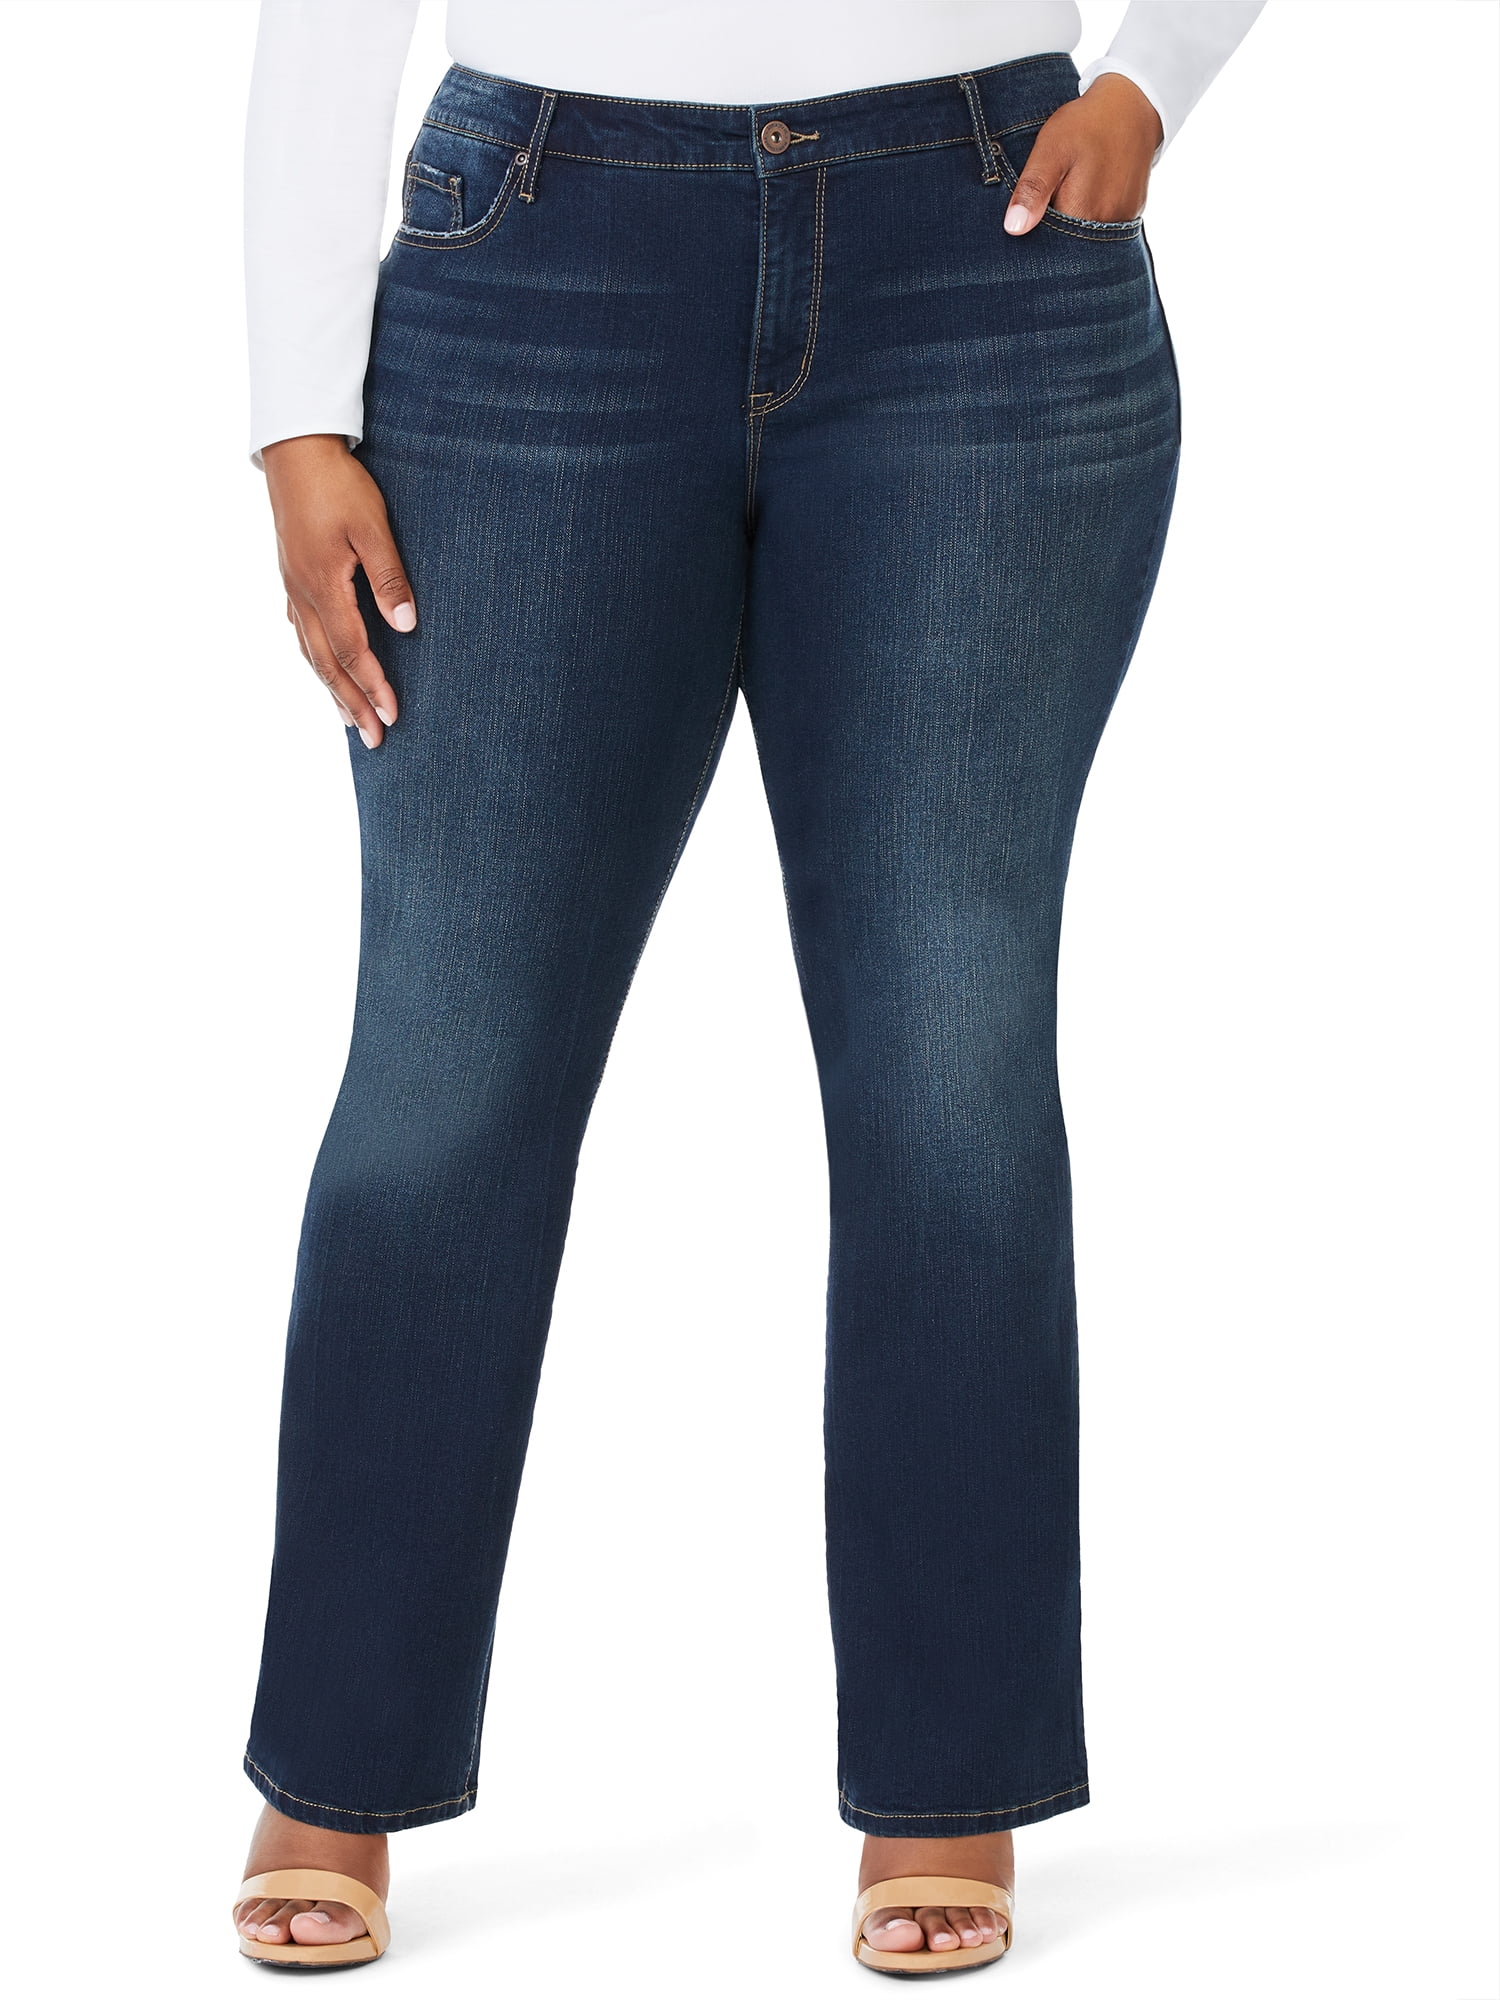 Sofia Jeans Women's Plus Size Marisol Curvy Bootcut Mid-Rise Jeans ...